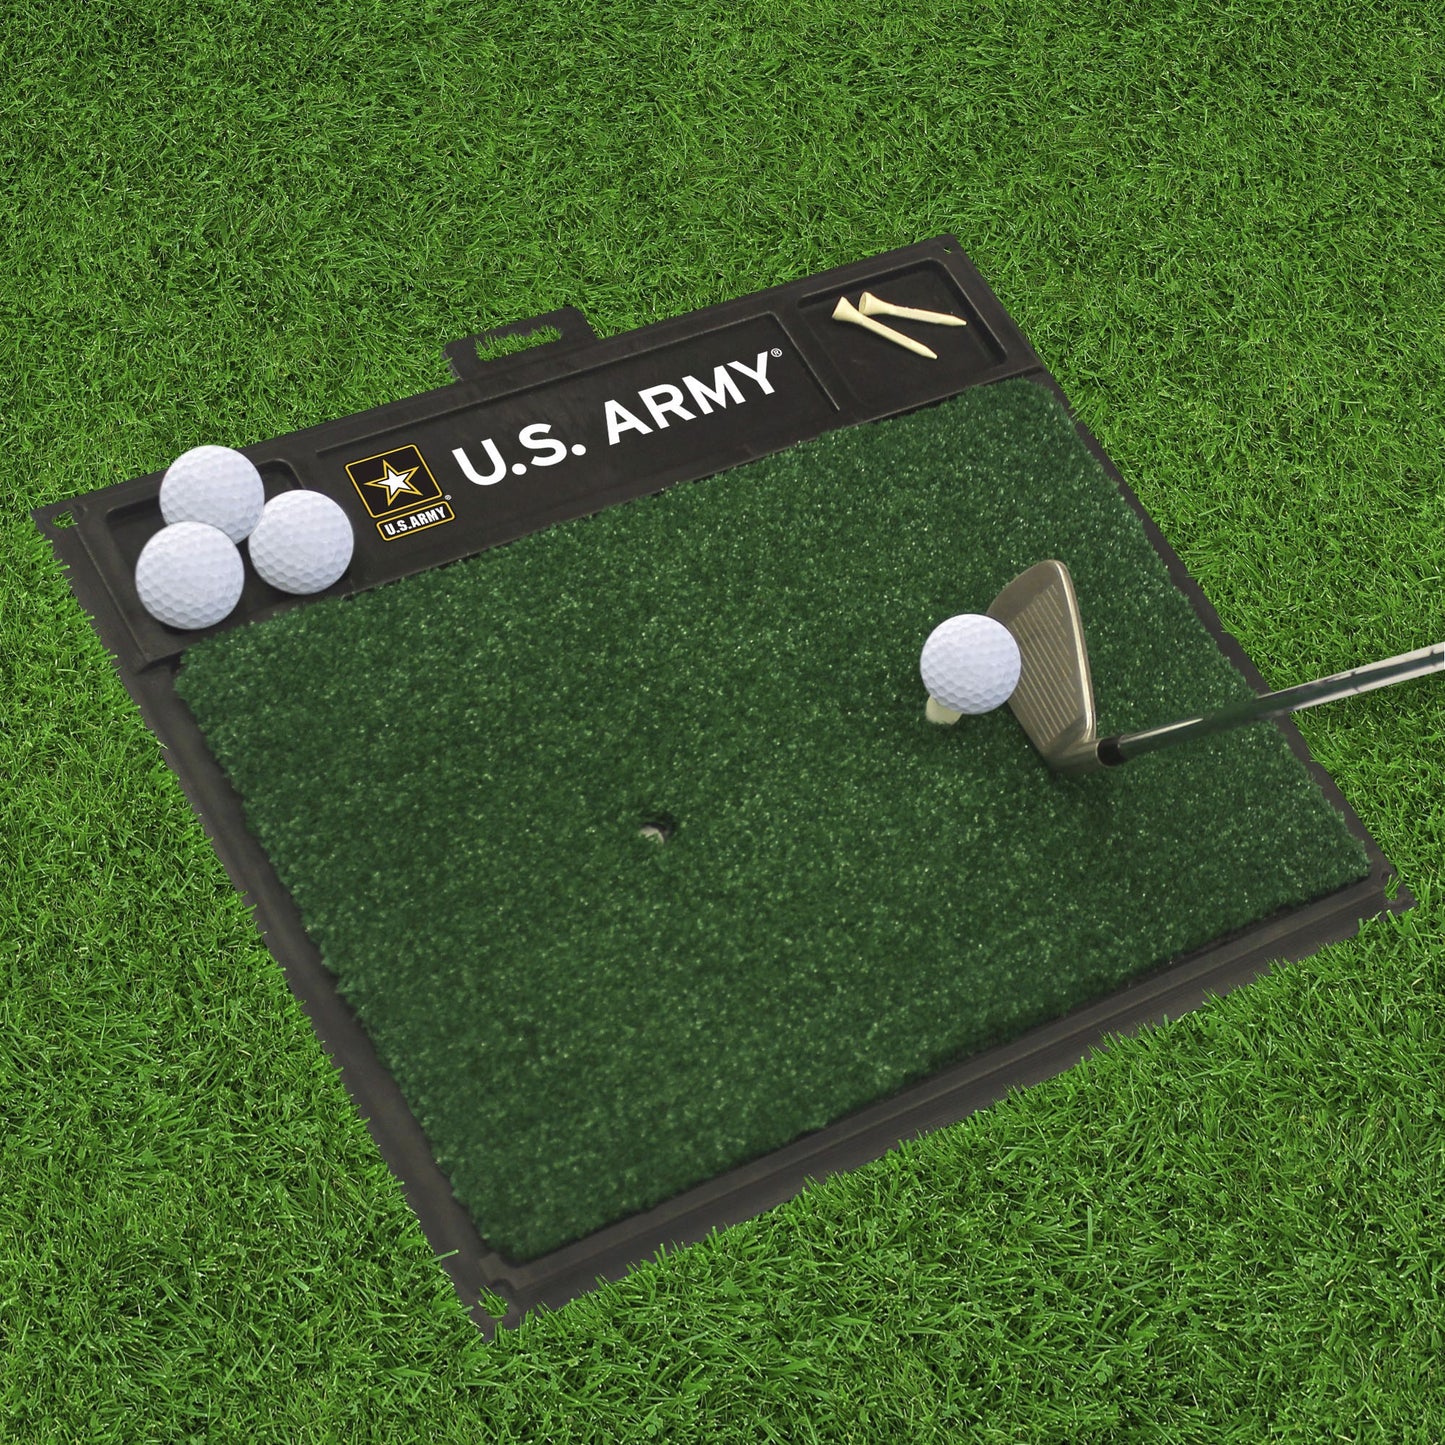 U.S. Army Golf Hitting Mat by Fanmats